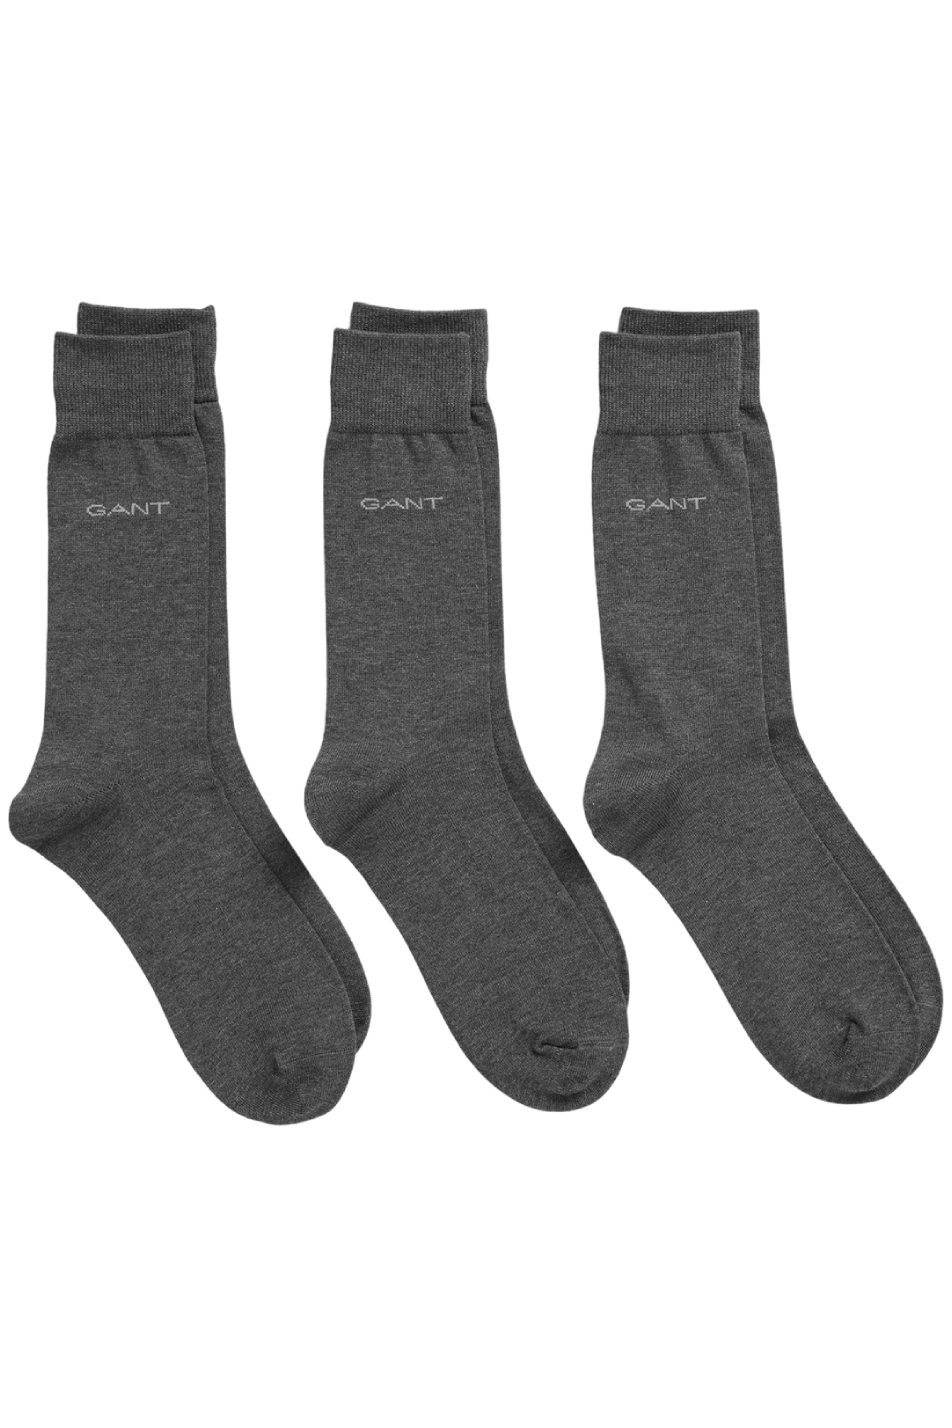 Gant 3 Pack Mercerized Cotton Sock